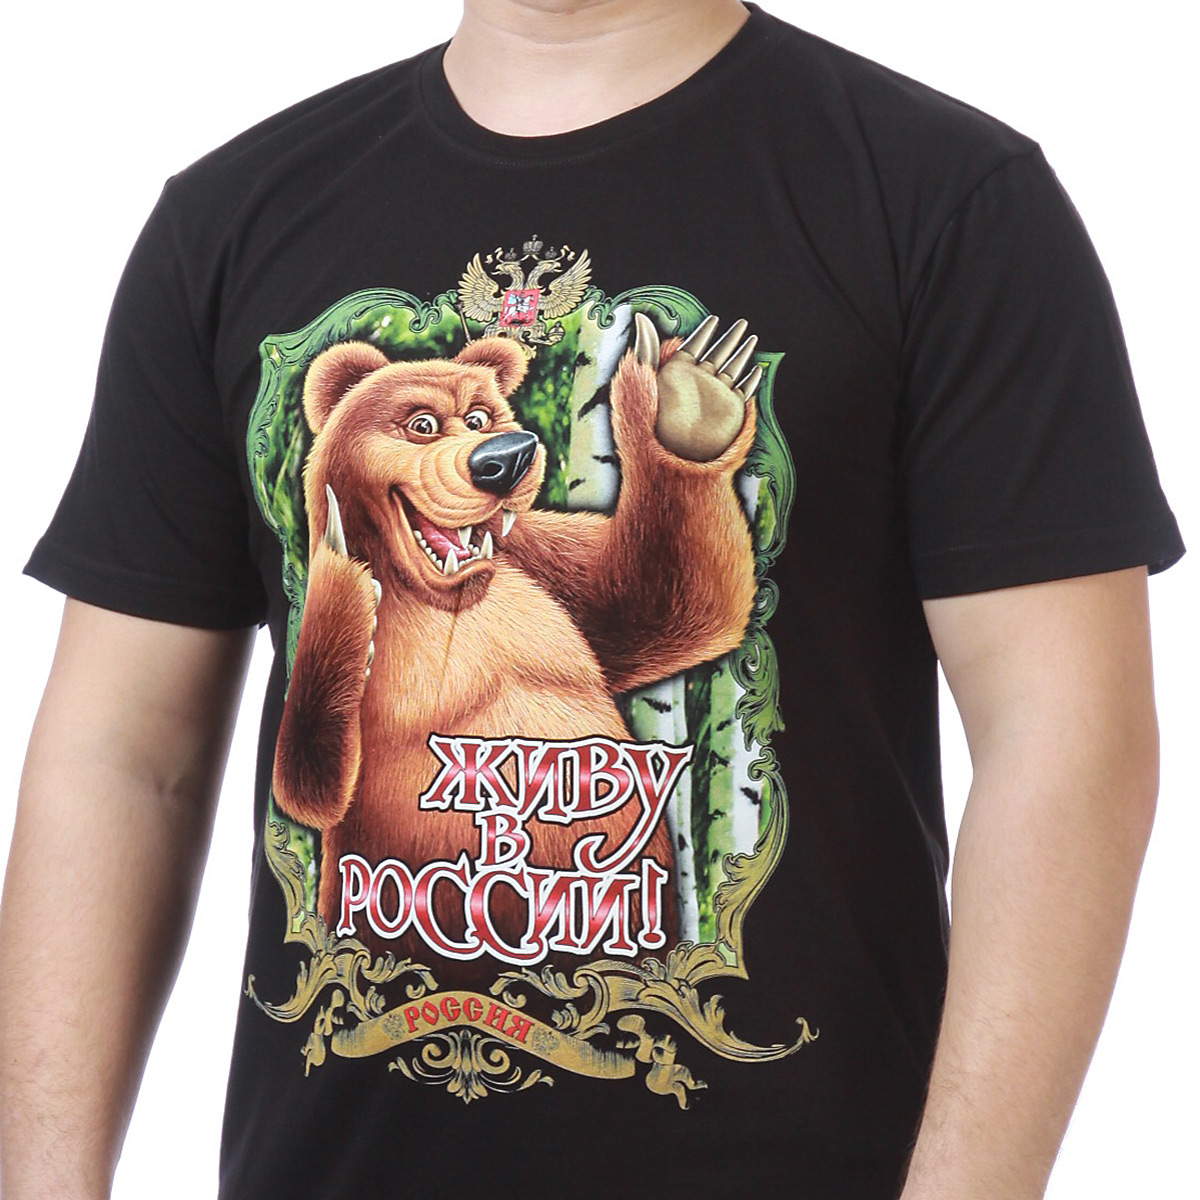 Заказать футболки "Живу в России!" выгодно и быстро